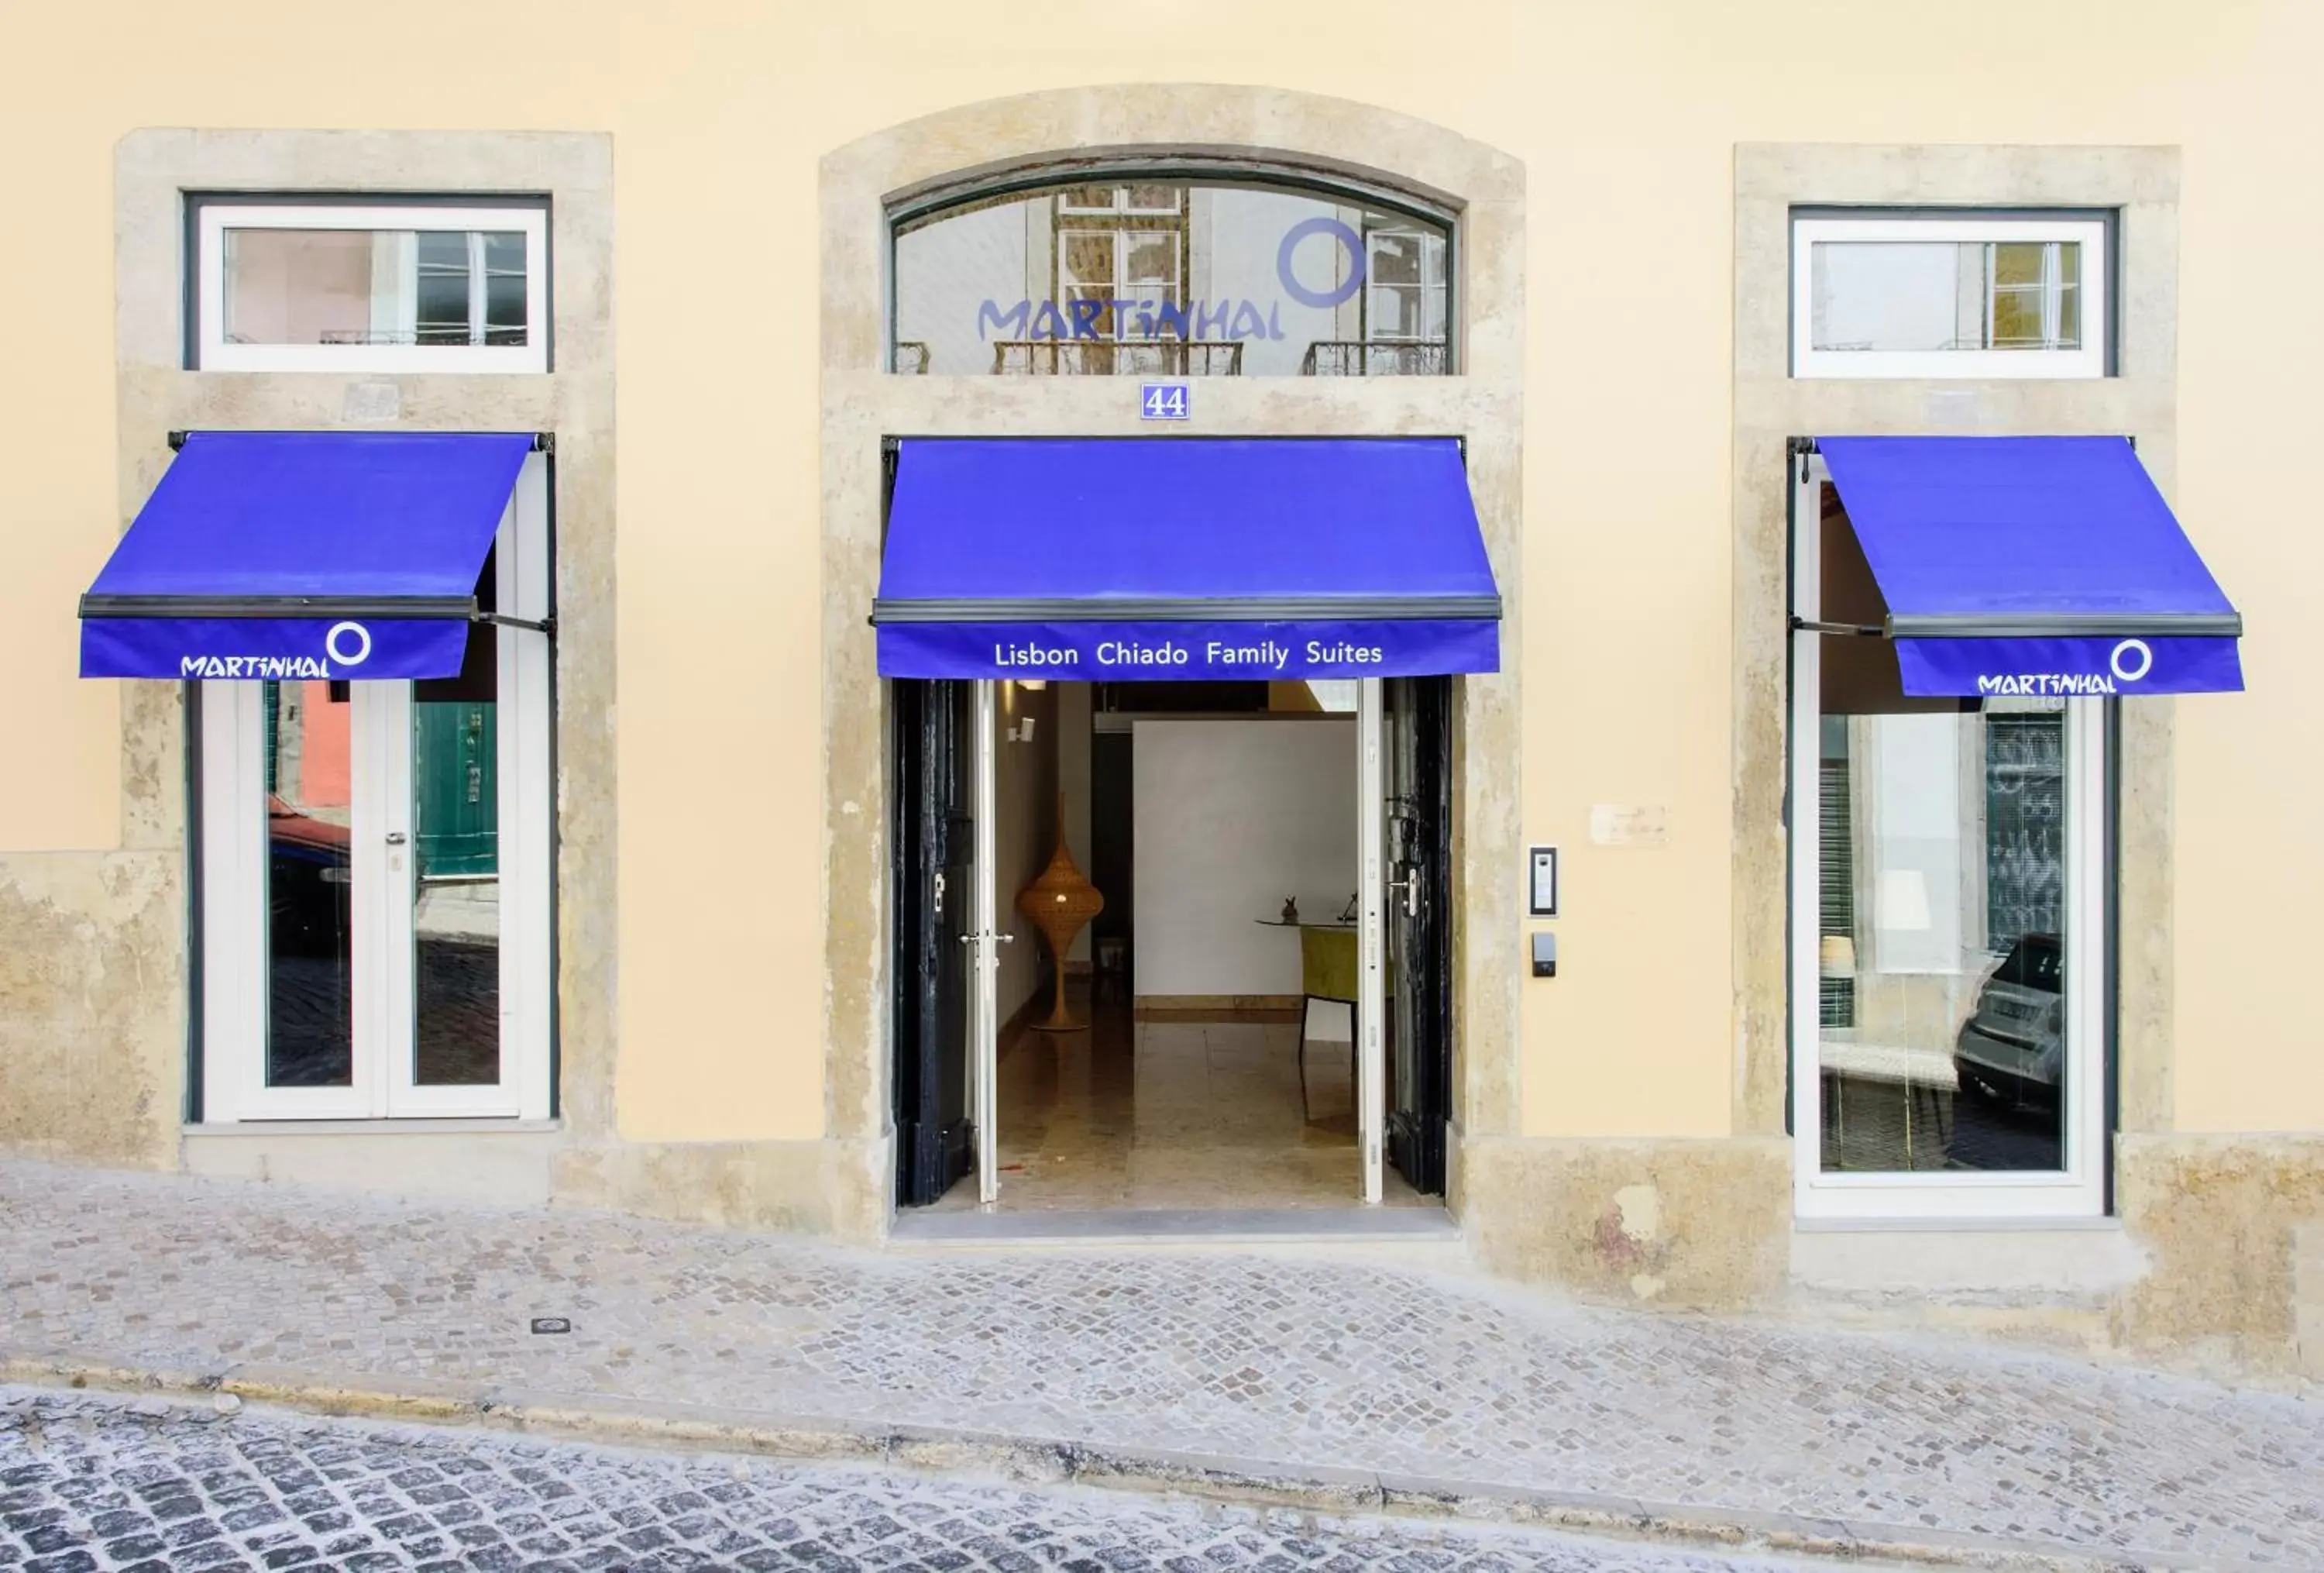 Facade/entrance in Martinhal Lisbon Chiado